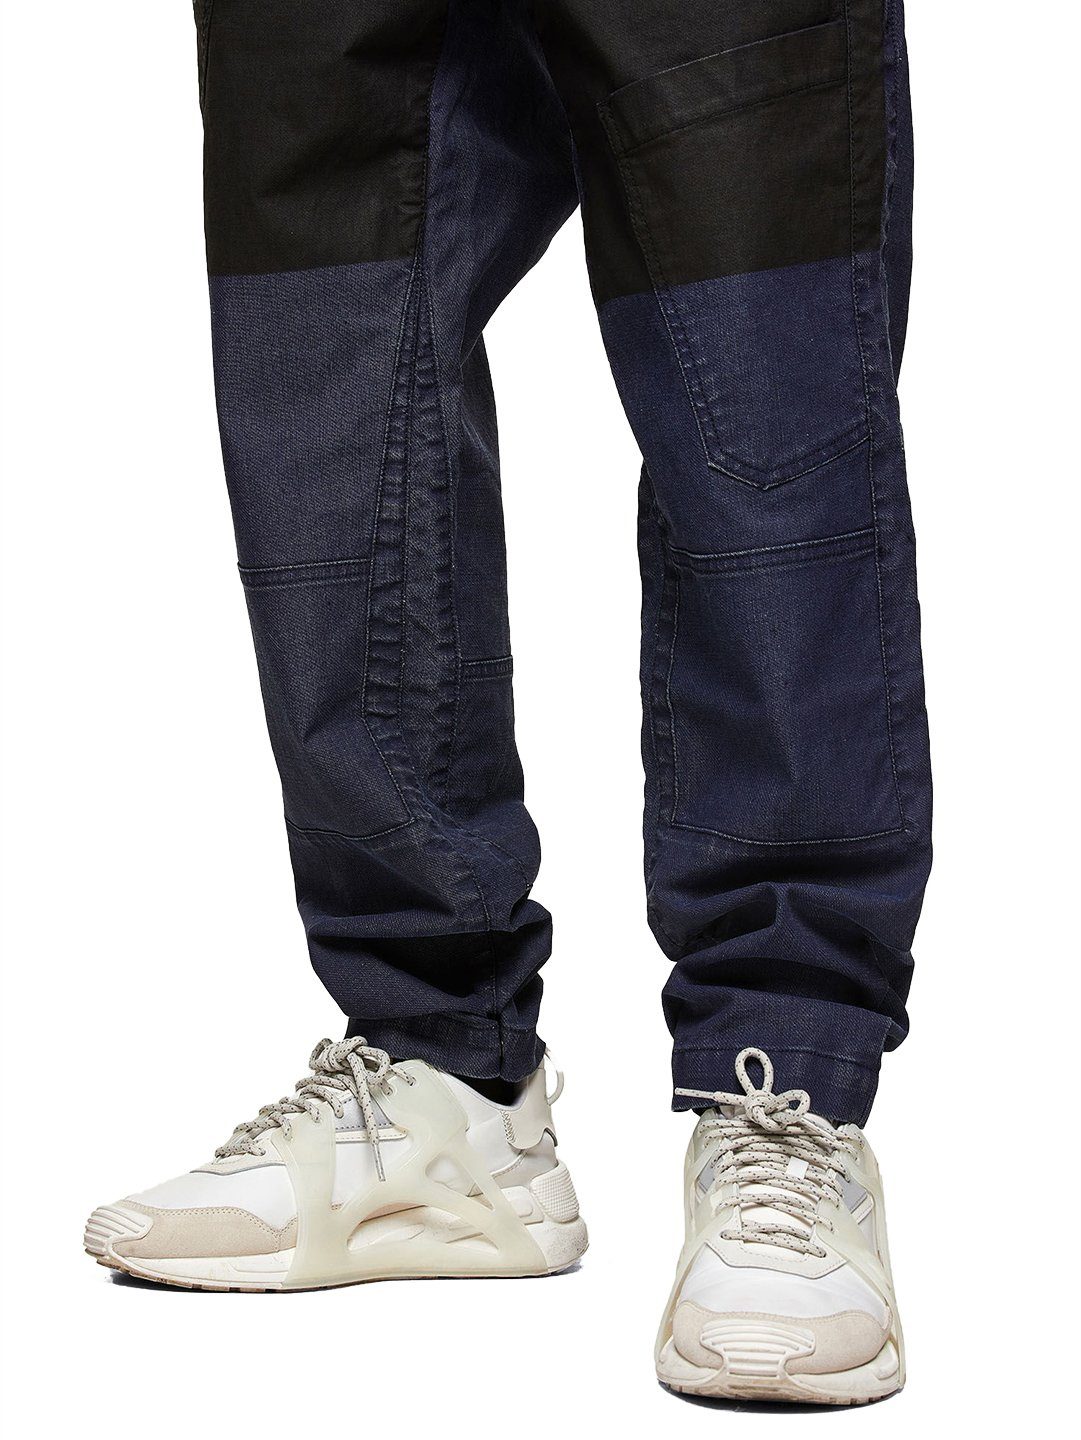 Loose-fit-Jeans Straight - - W32 L34 Diesel JoggJeans D-Azerr beschichtete